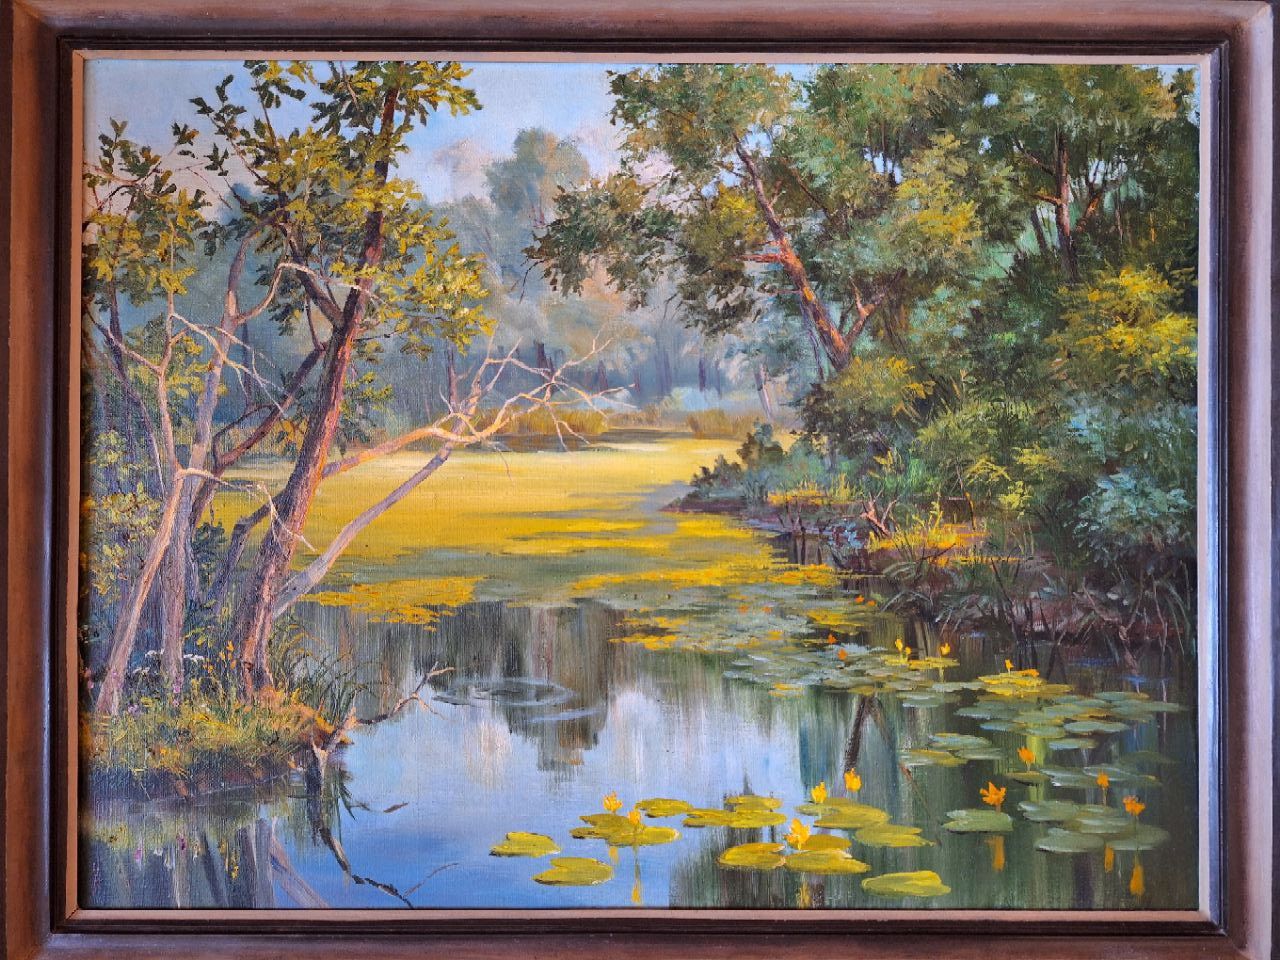 Картина на холсте "Заросший пруд с кувшинками" Печенкина.О